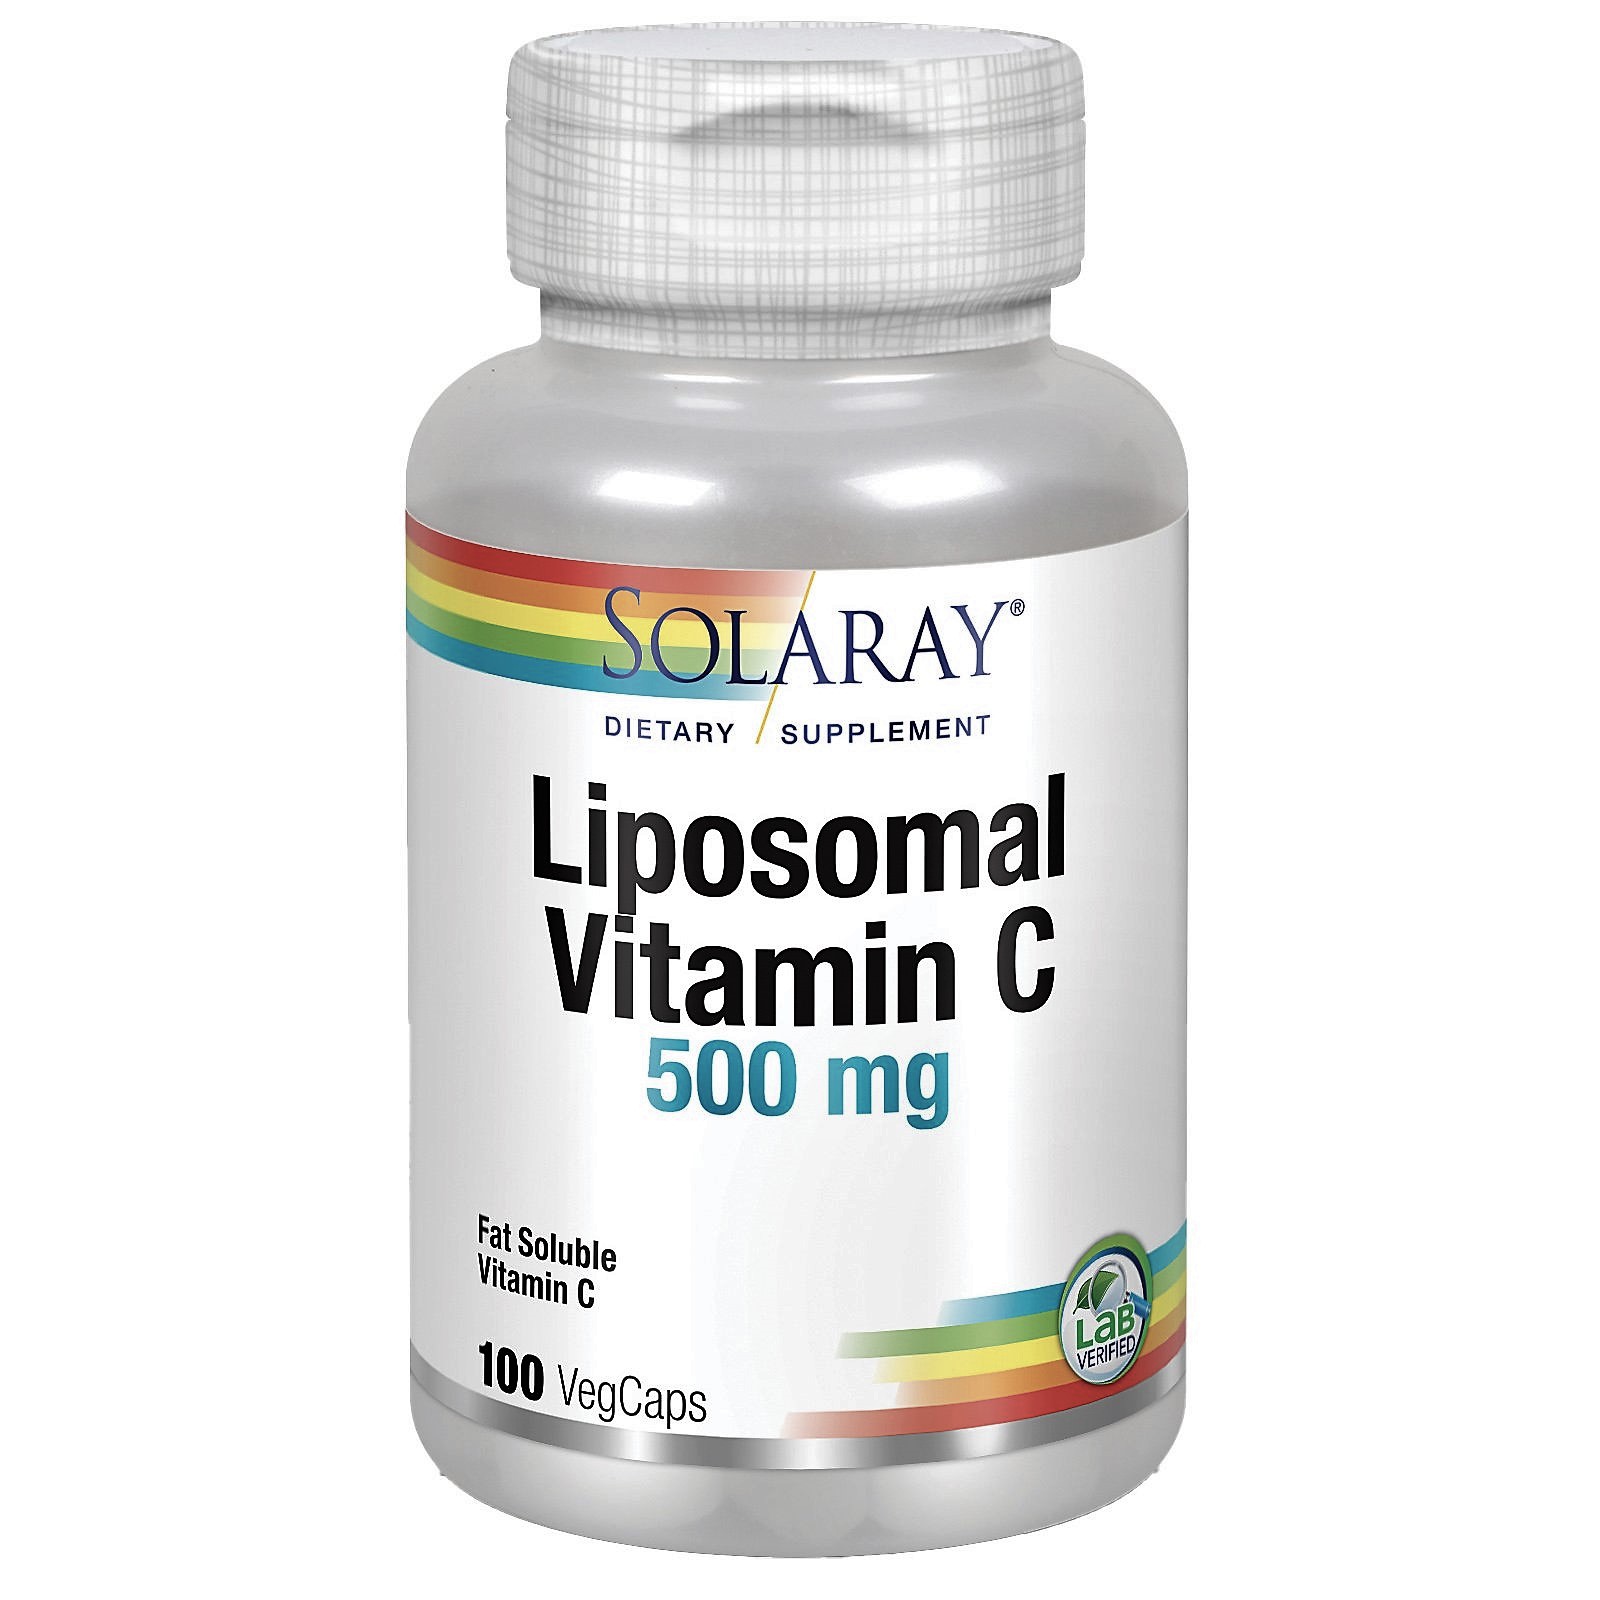 Liposomal Vitamin C incorpora todos los beneficios de la Vitamina C en una innovadora fórmula